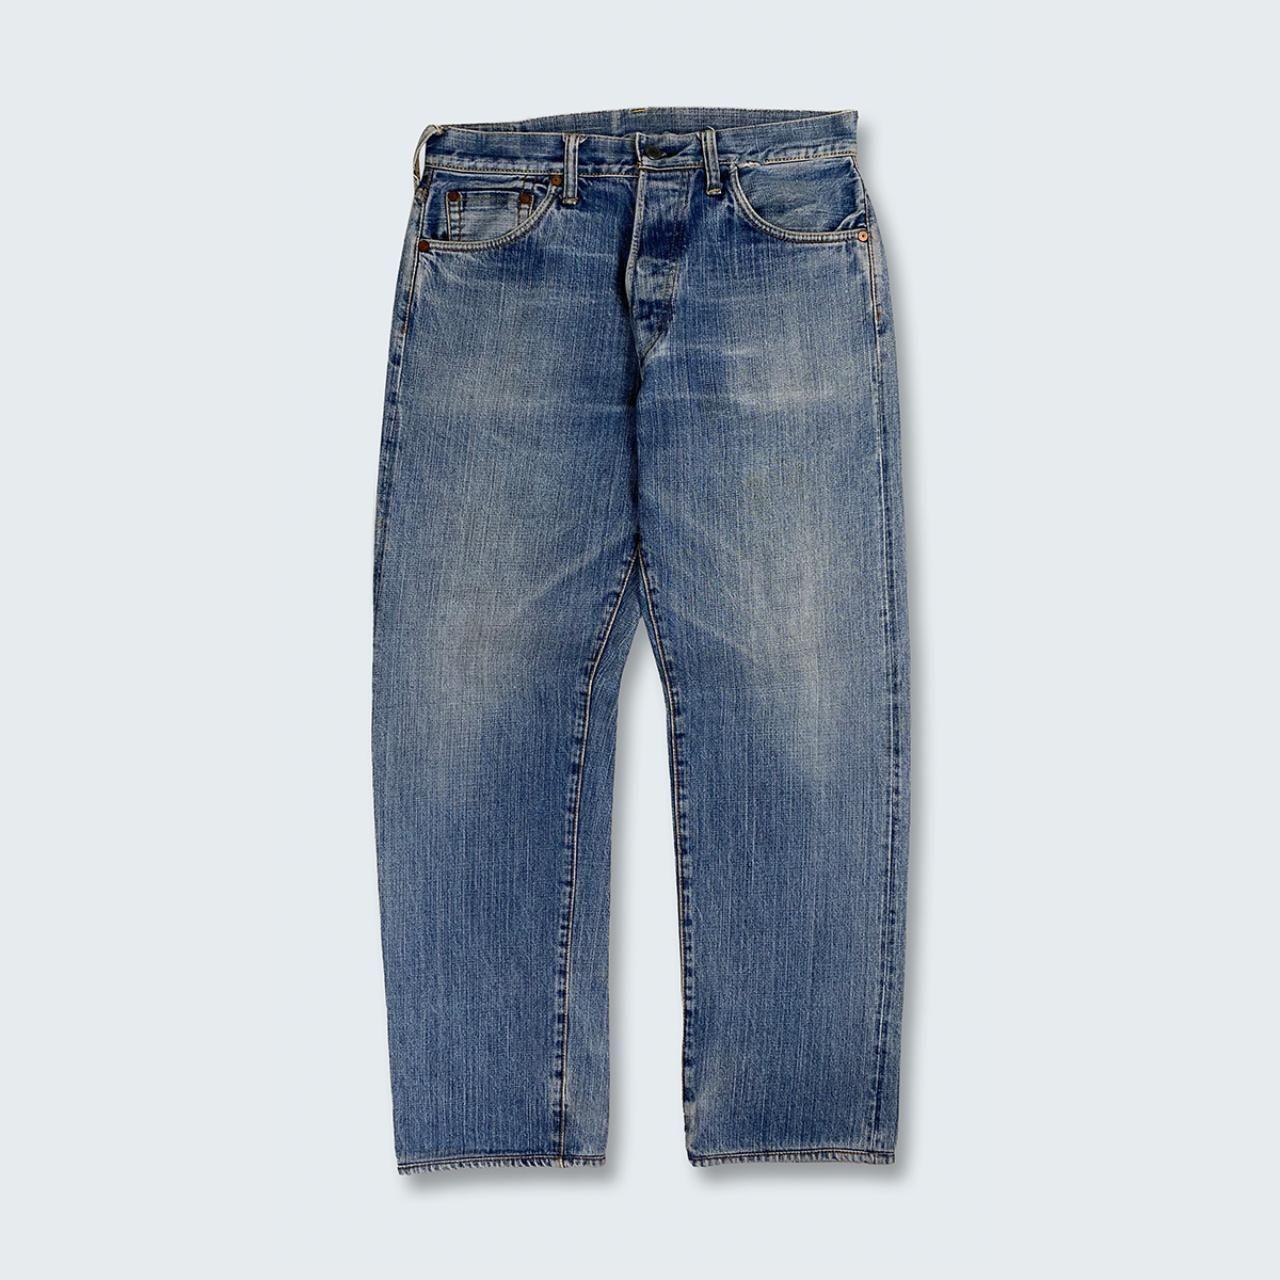 Authentic Vintage Evisu Jeans (32")